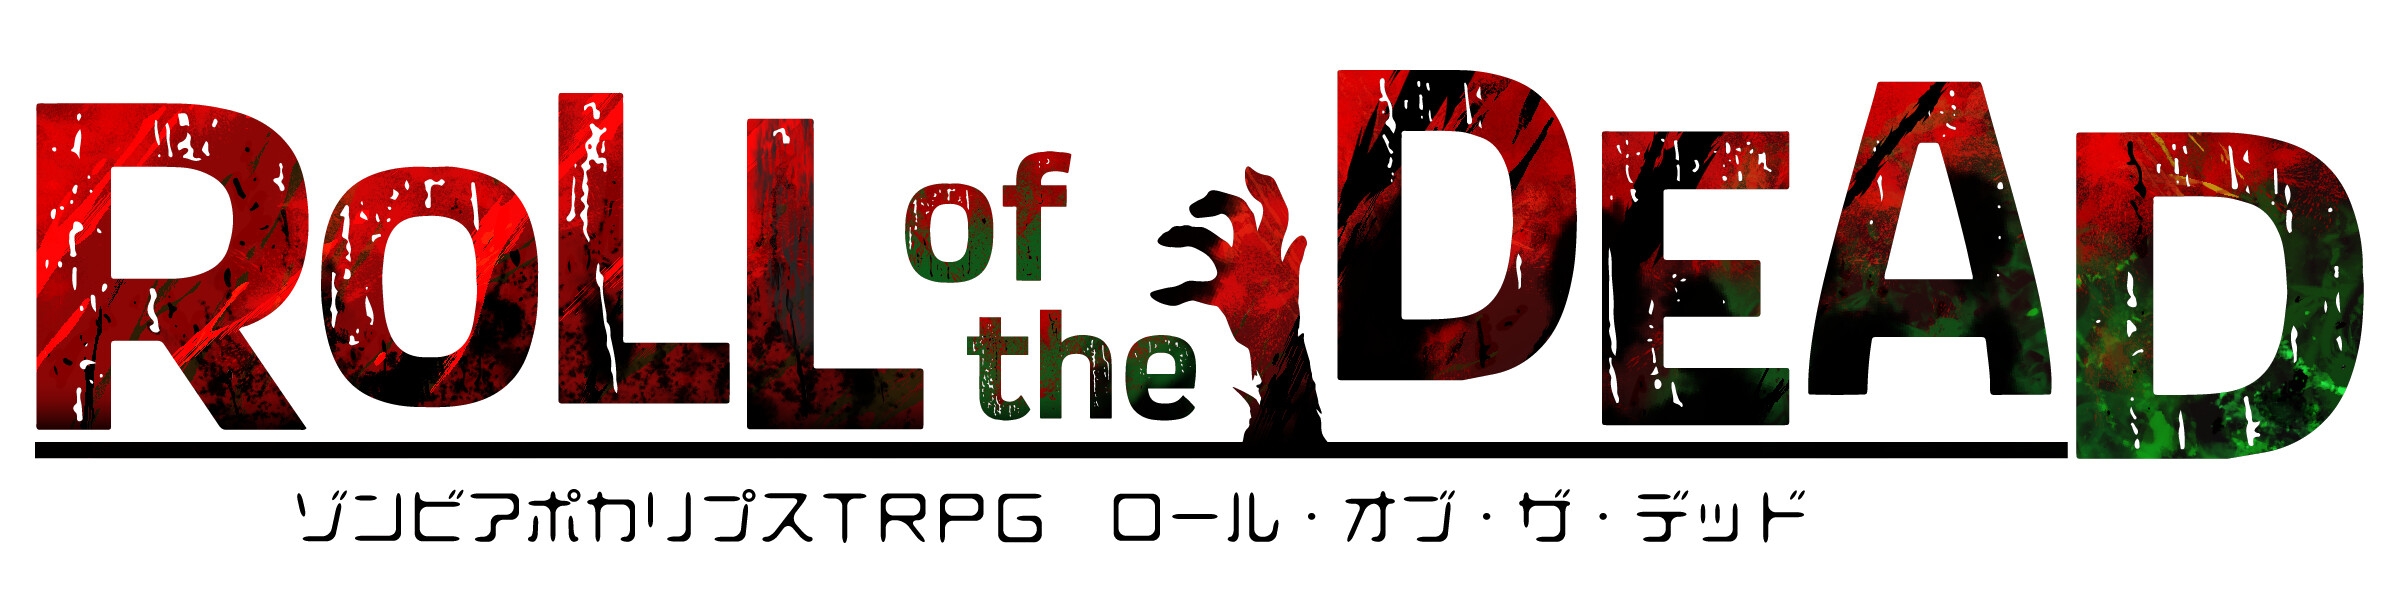 ゾンビアポカリプスTRPG『ROLL of the DEAD』 [Parfait STYLE]